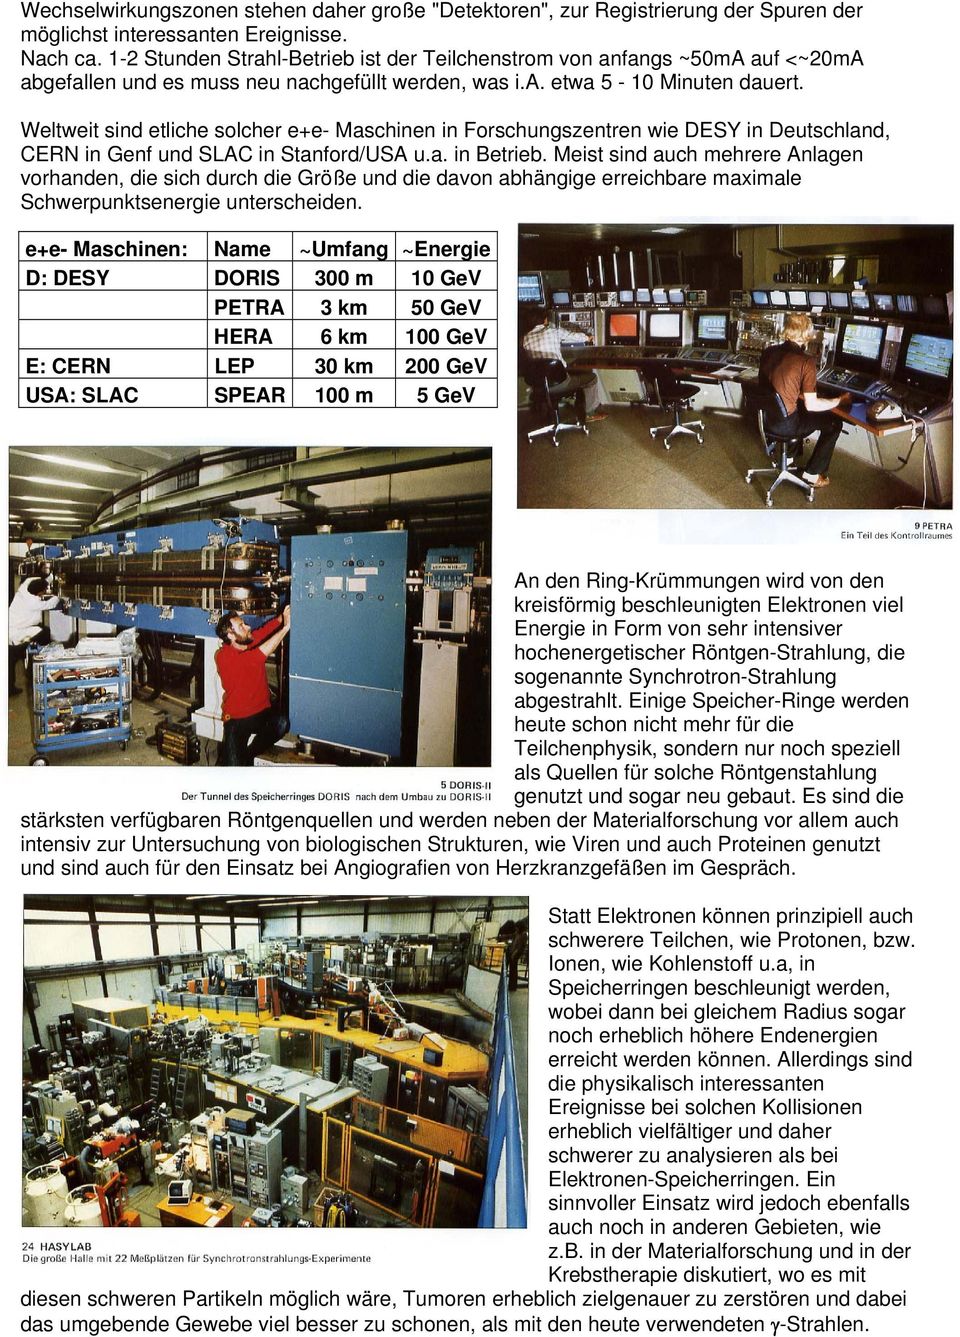 Weltweit sind etliche solcher e+e- Maschinen in Forschungszentren wie DESY in Deutschland, CERN in Genf und SLAC in Stanford/USA u.a. in Betrieb.